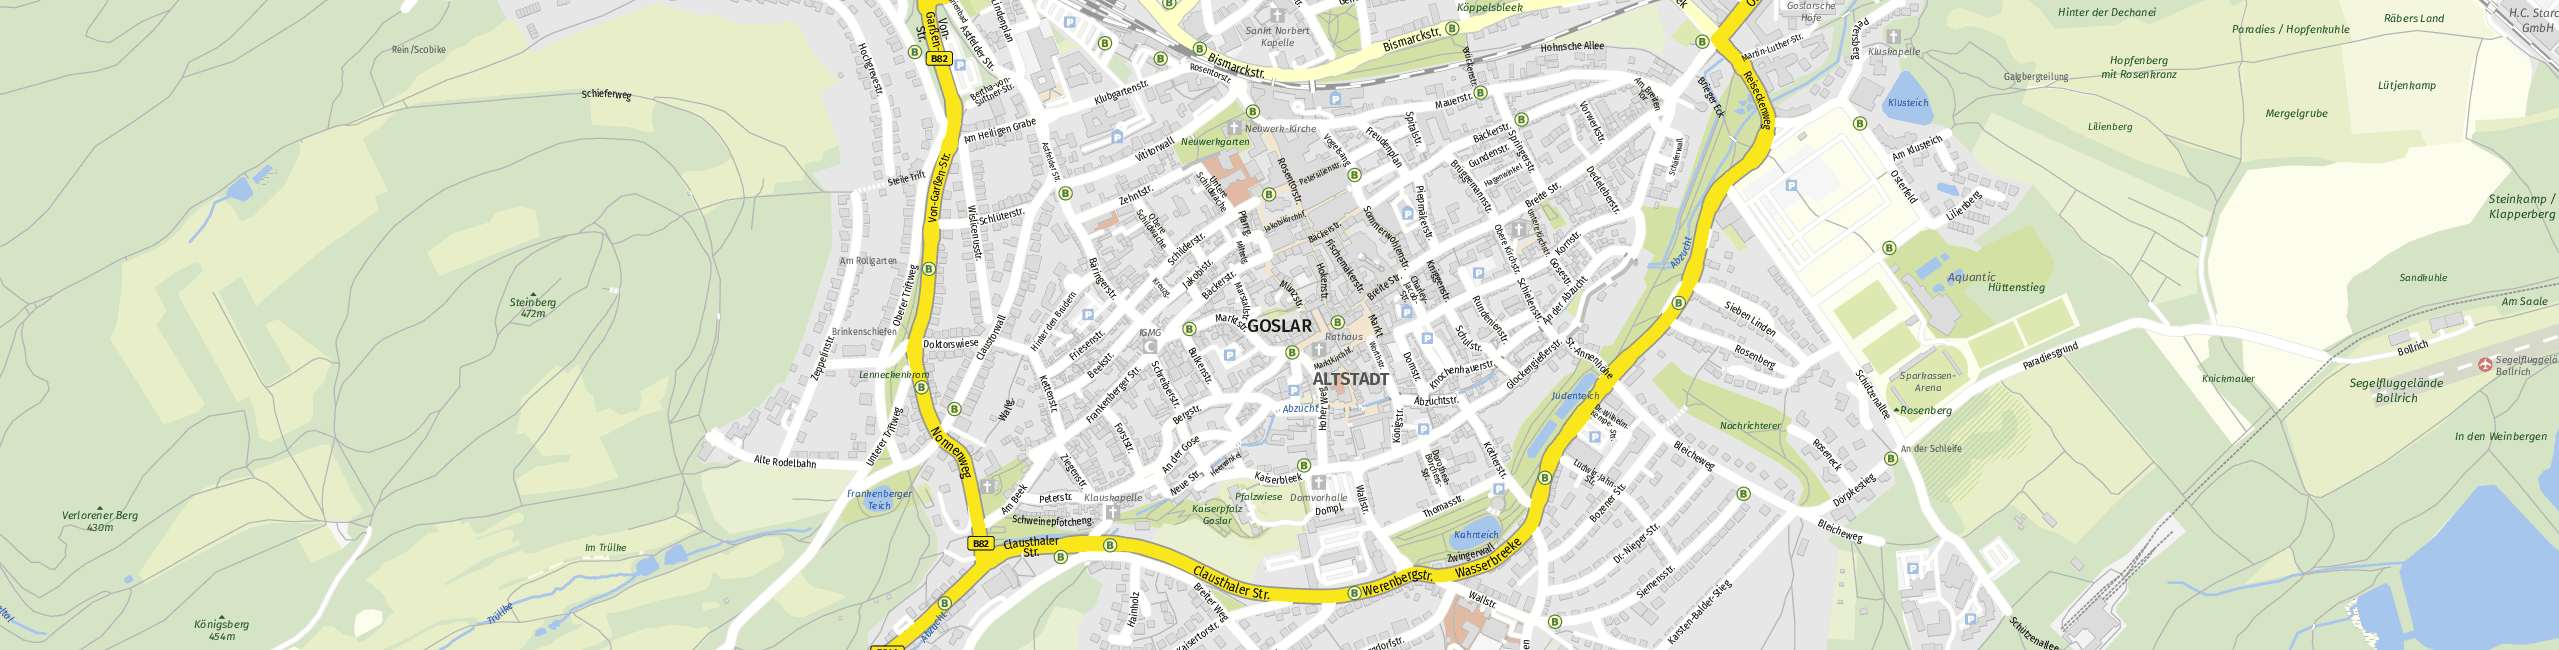 Stadtplan Goslar zum Downloaden.